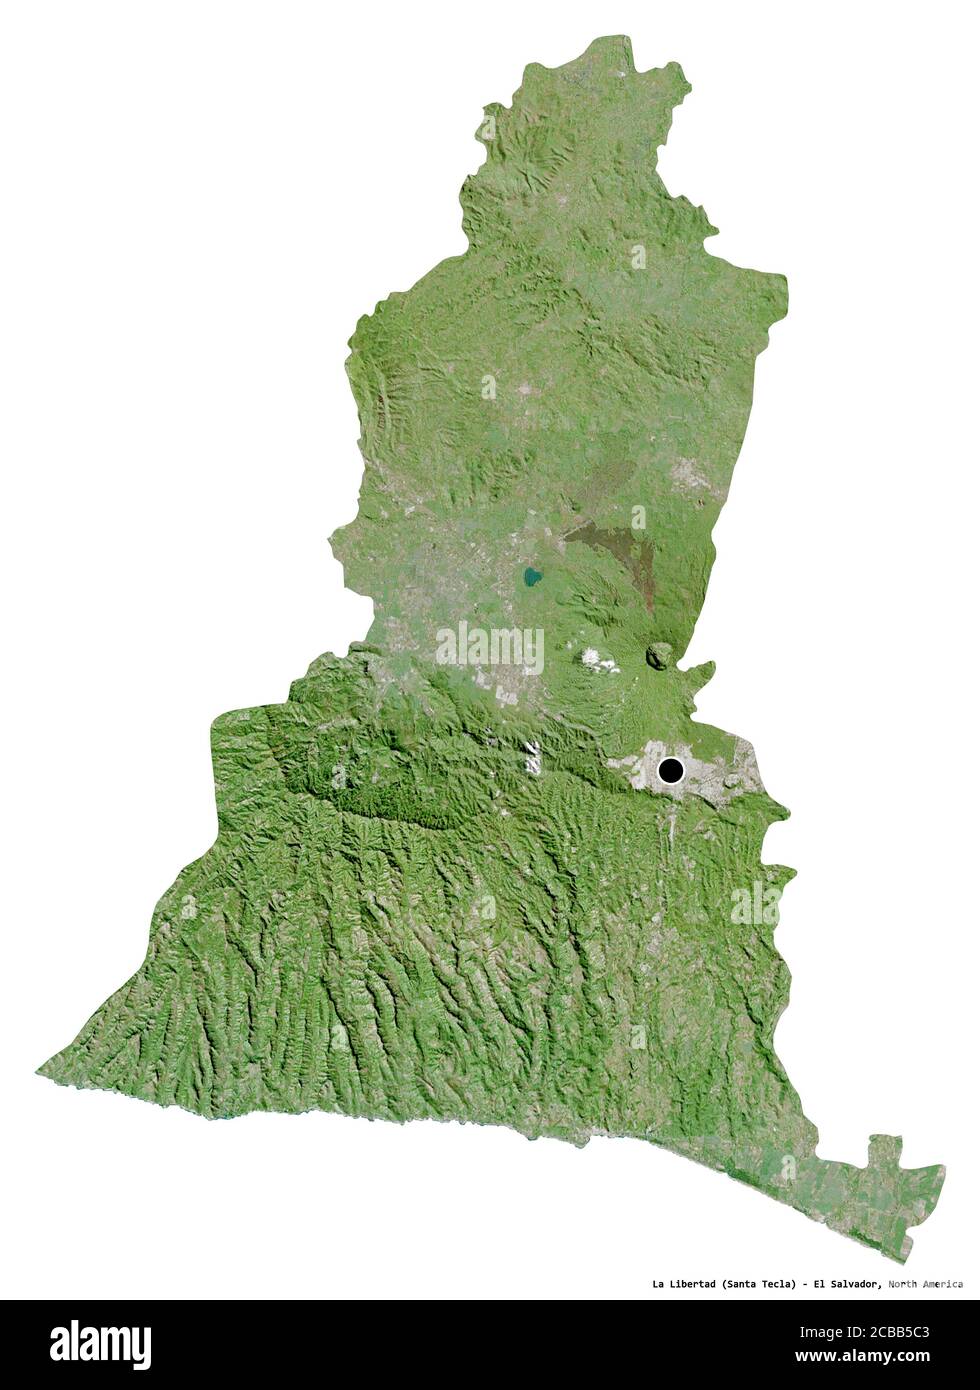 Forme de la Libertad, département d'El Salvador, avec sa capitale isolée sur fond blanc. Imagerie satellite. Rendu 3D Banque D'Images